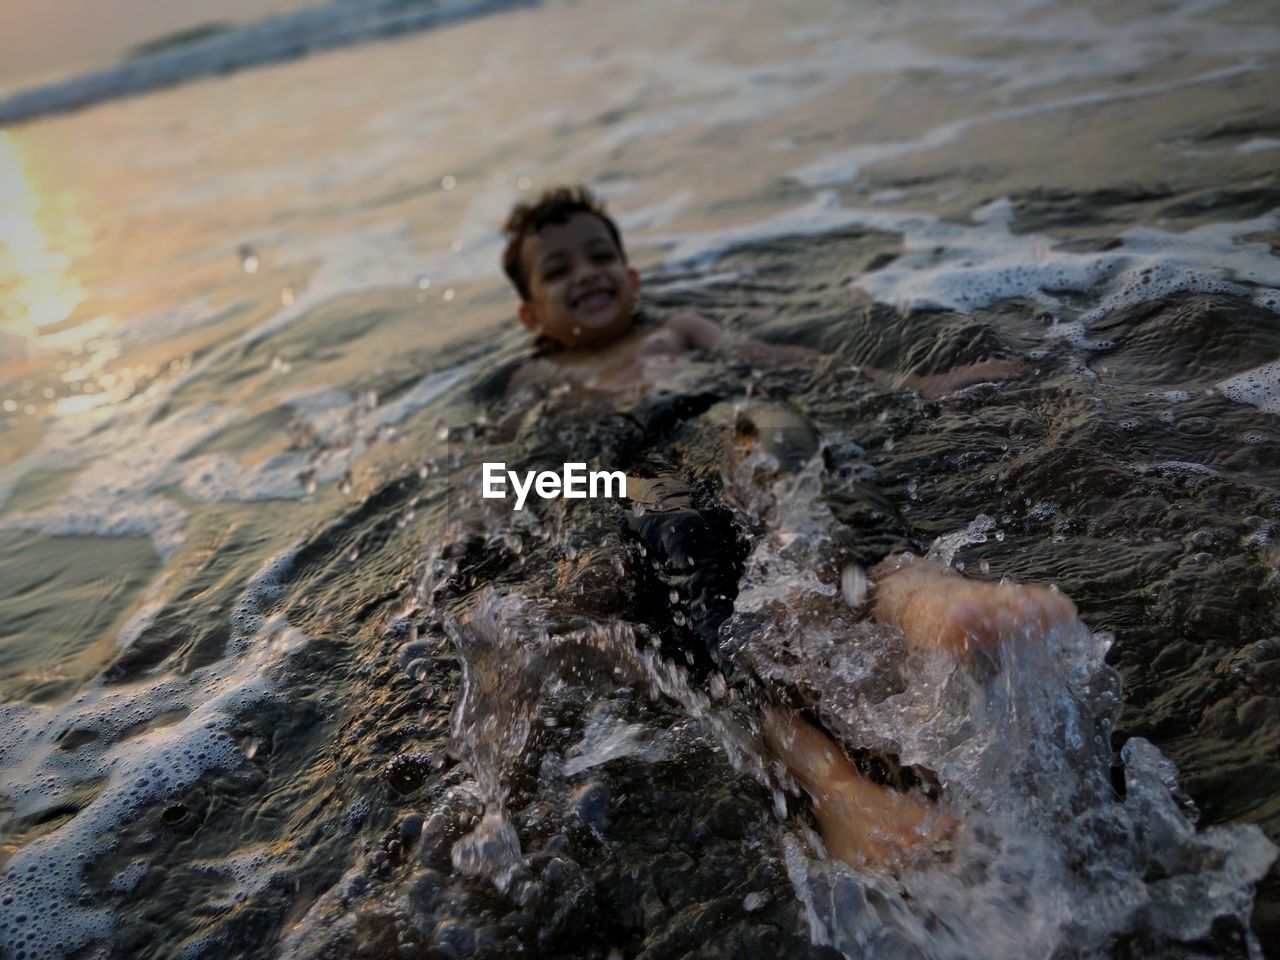 Shirtless boy swimming in sea during sunset